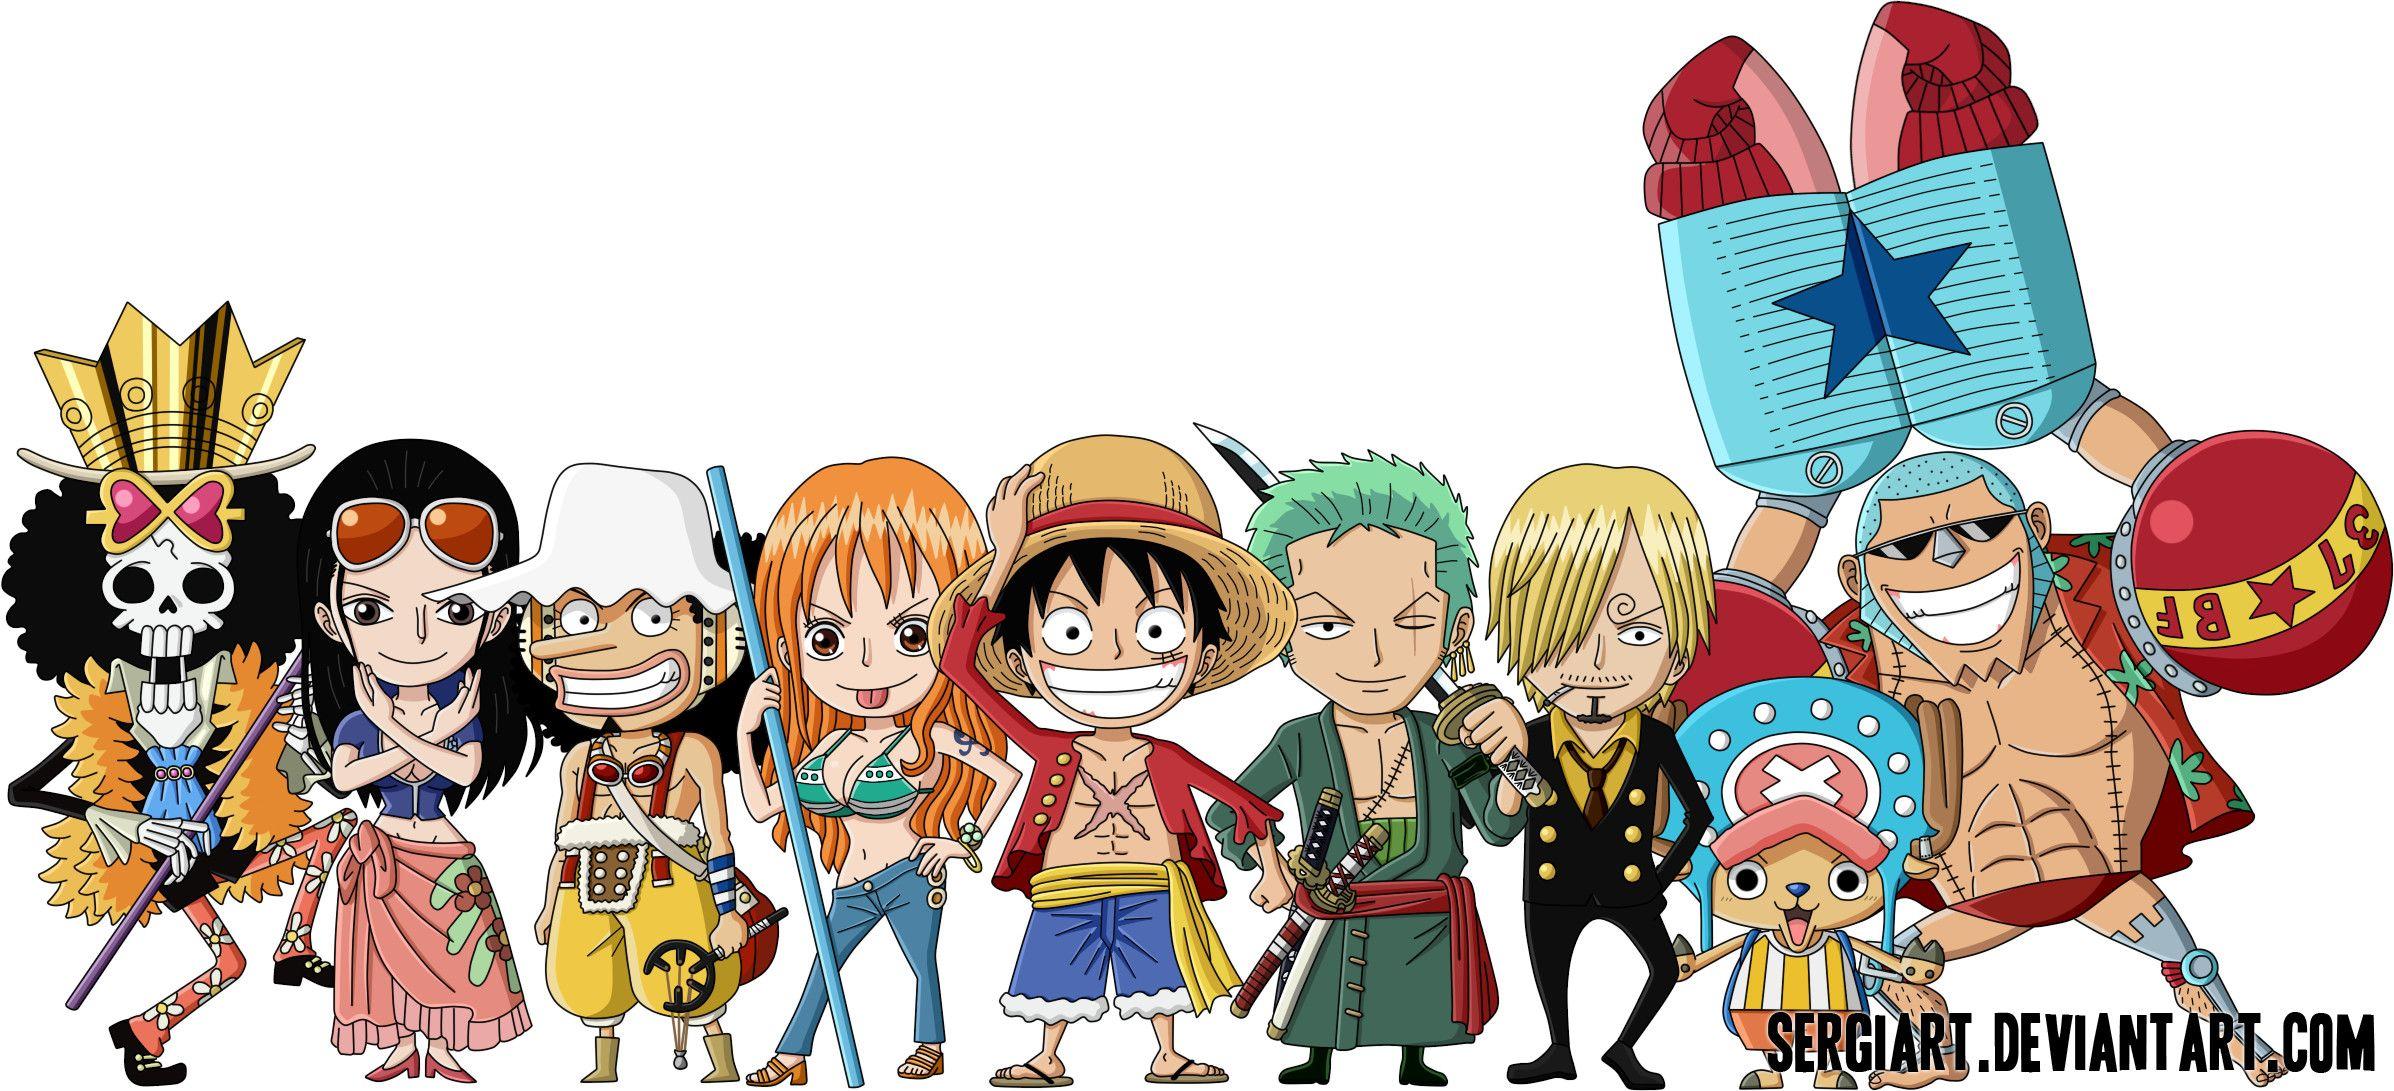 Nếu bạn yêu thích One Piece và những nhân vật đáng yêu, hãy xem hình ảnh của Chibi One Piece đáng yêu! Những nhân vật chibi này sẽ làm bạn cười và cảm thấy hạnh phúc. Đừng bỏ lỡ cơ hội để thưởng thức những hình ảnh đáng yêu của One Piece.